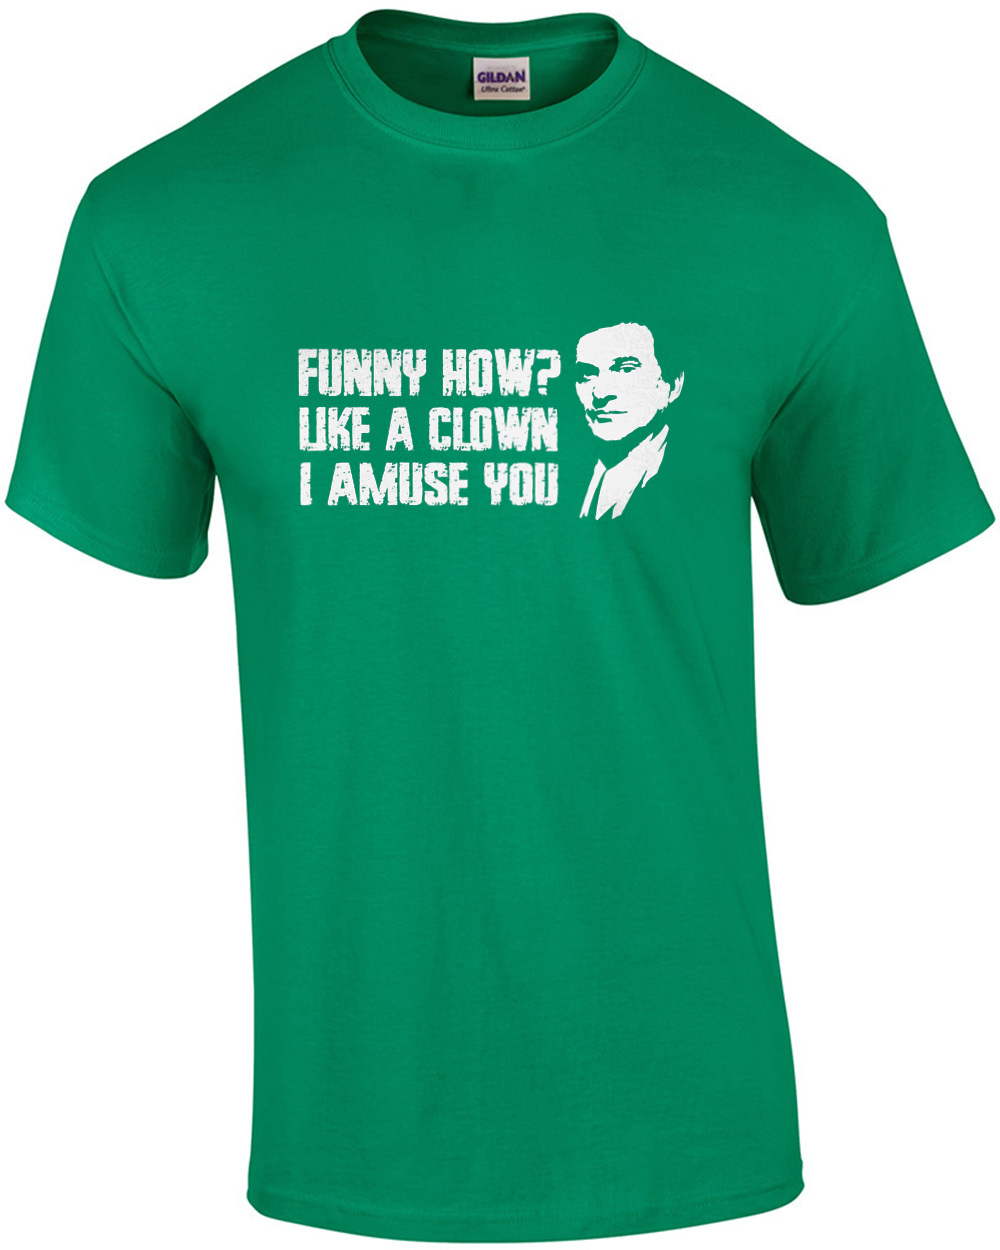 Funny how? Like a clown - I amuse you - Joe Pesci - Goodfellas - 90's  T-Shirt | eBay